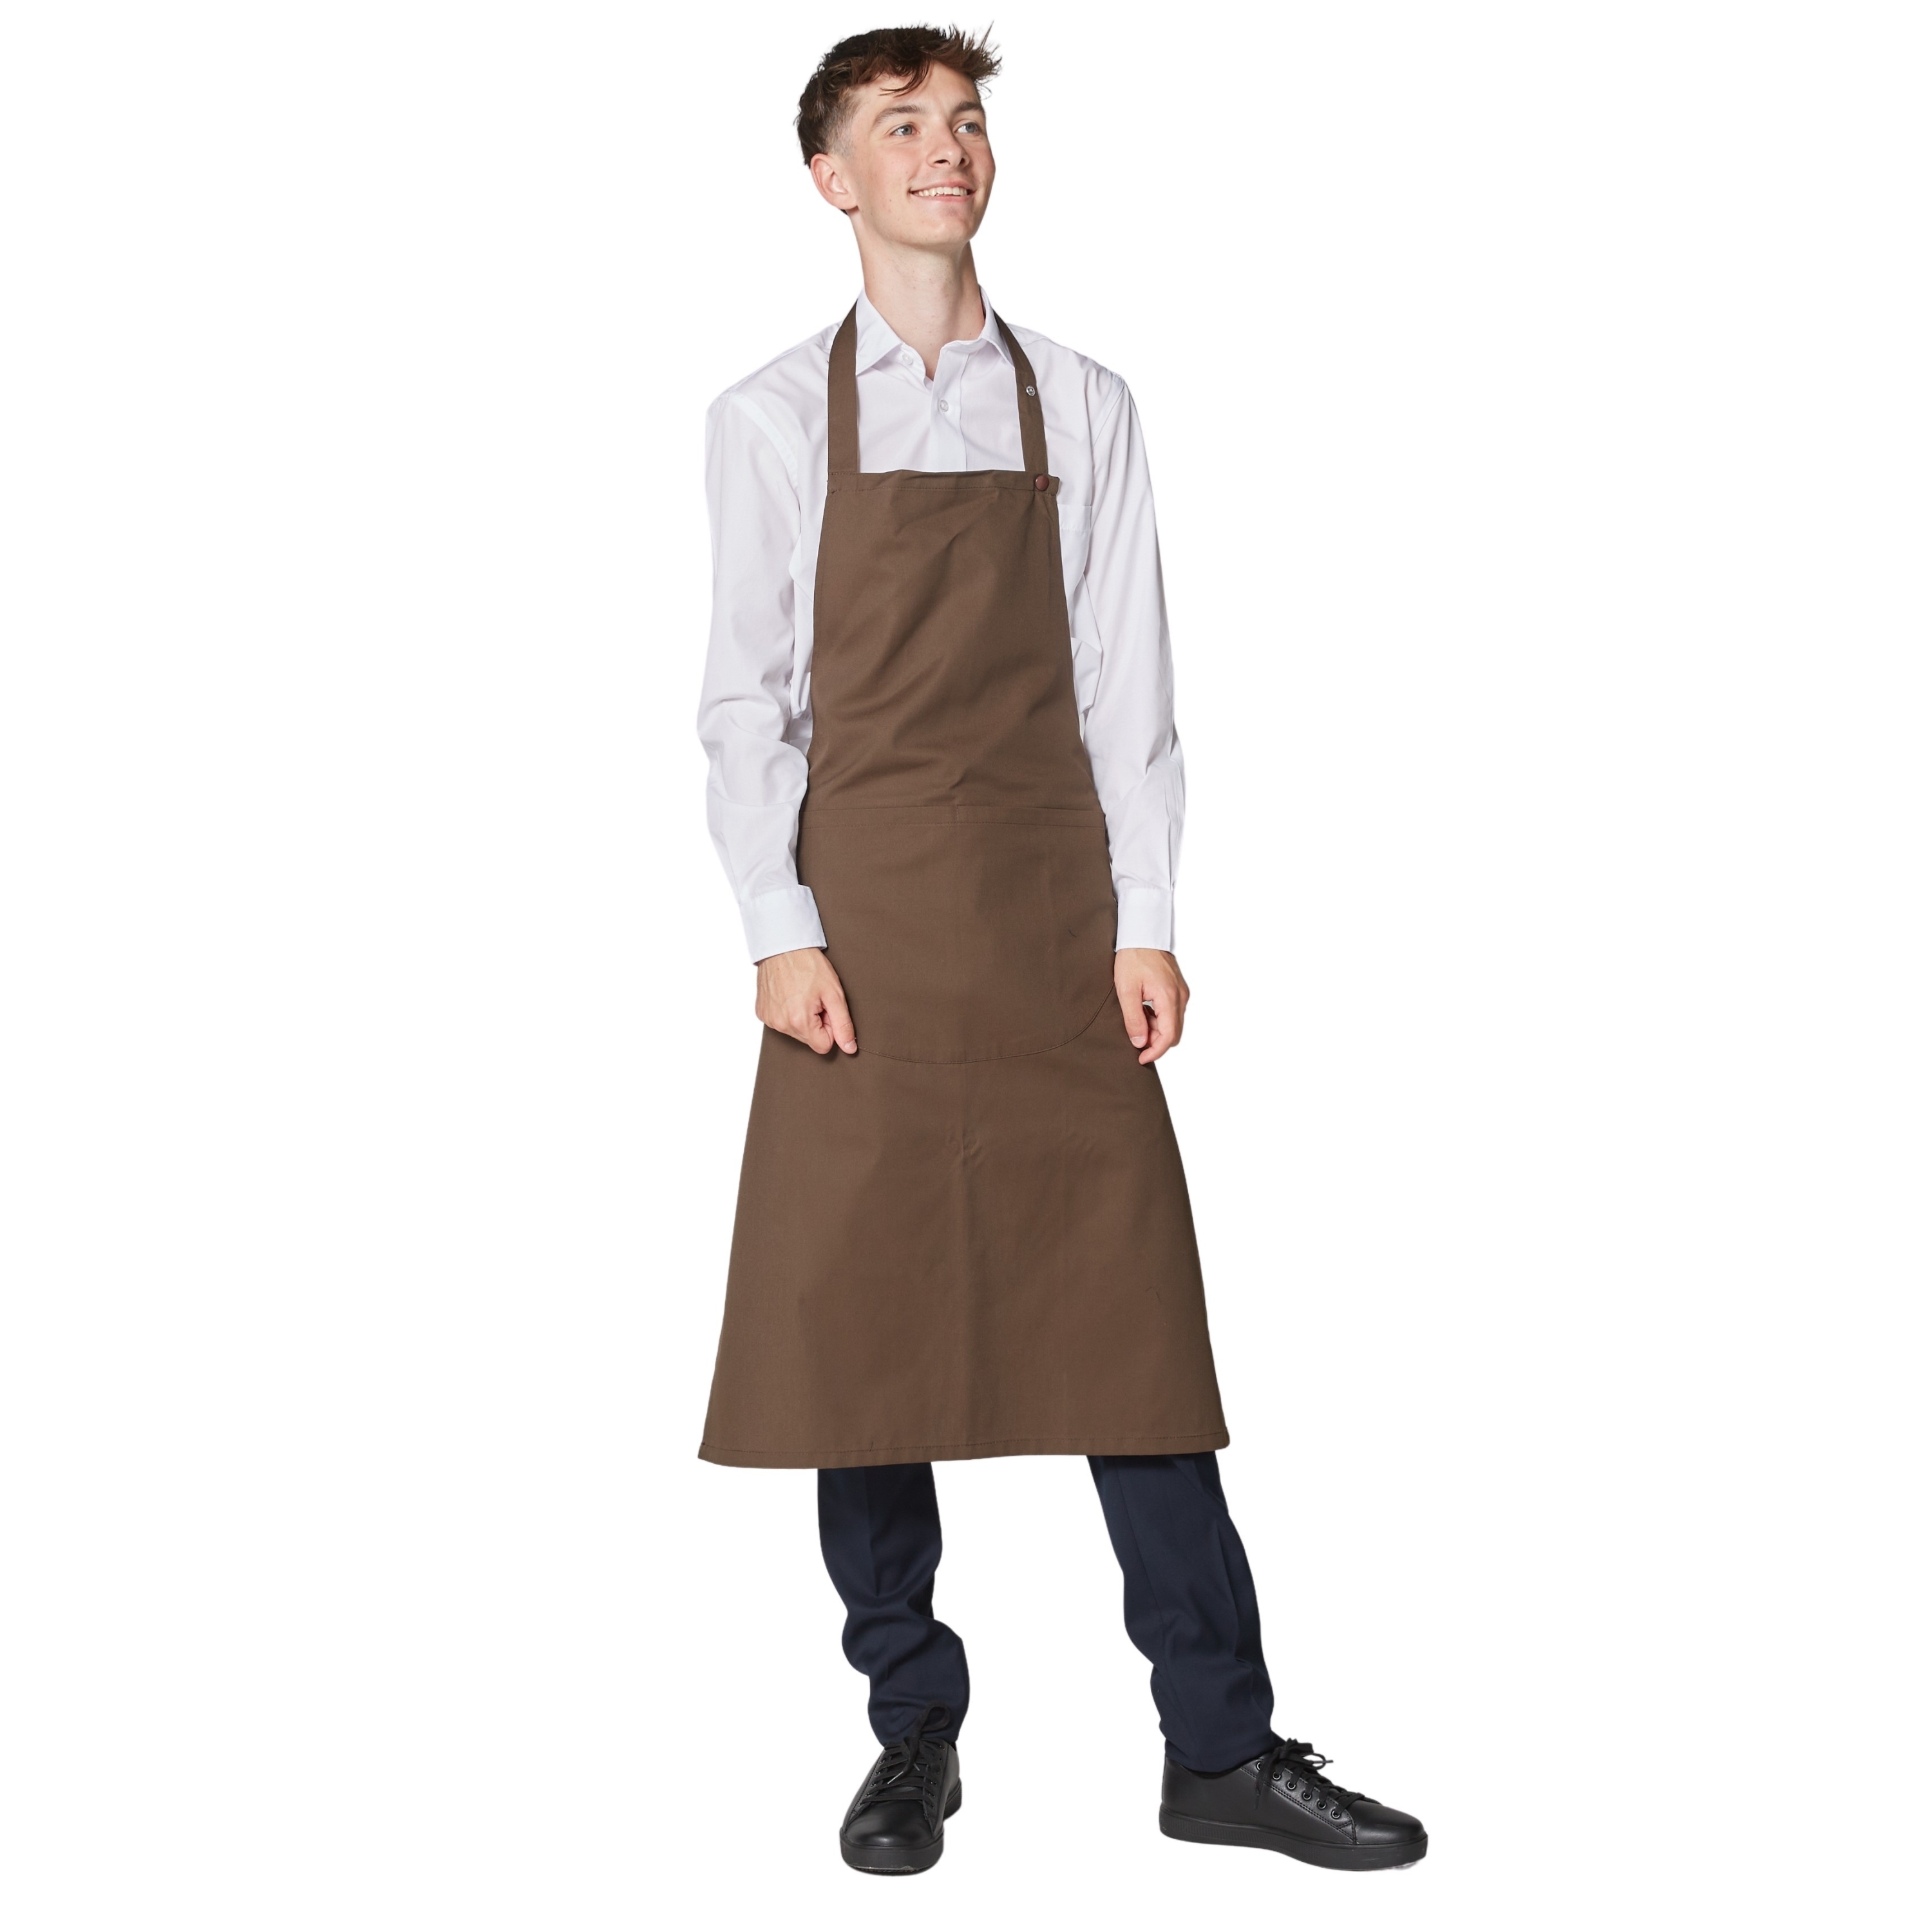 Tablier de cuisinier ou de barman, court 40cm, couleur marron